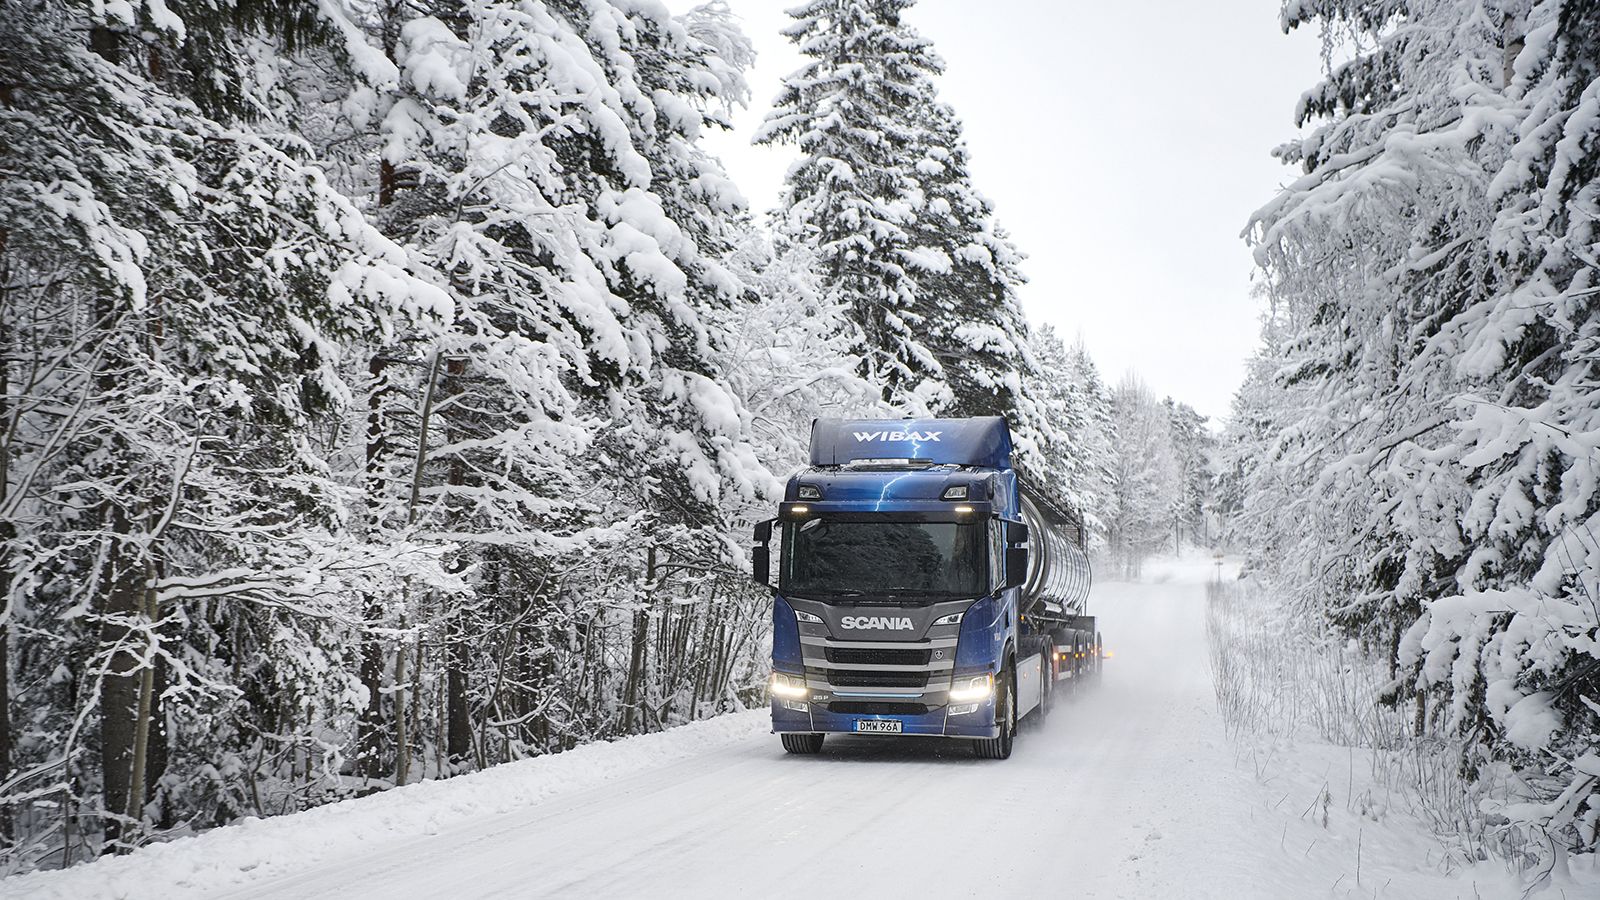 Ως μέρος μιας μακροπρόθεσμης συνεργασίας, η Scania και η Wibax θα συνεργαστούν για να βελτιστοποιήσουν τη χρήση του οχήματος με την πάροδο του χρόνου.